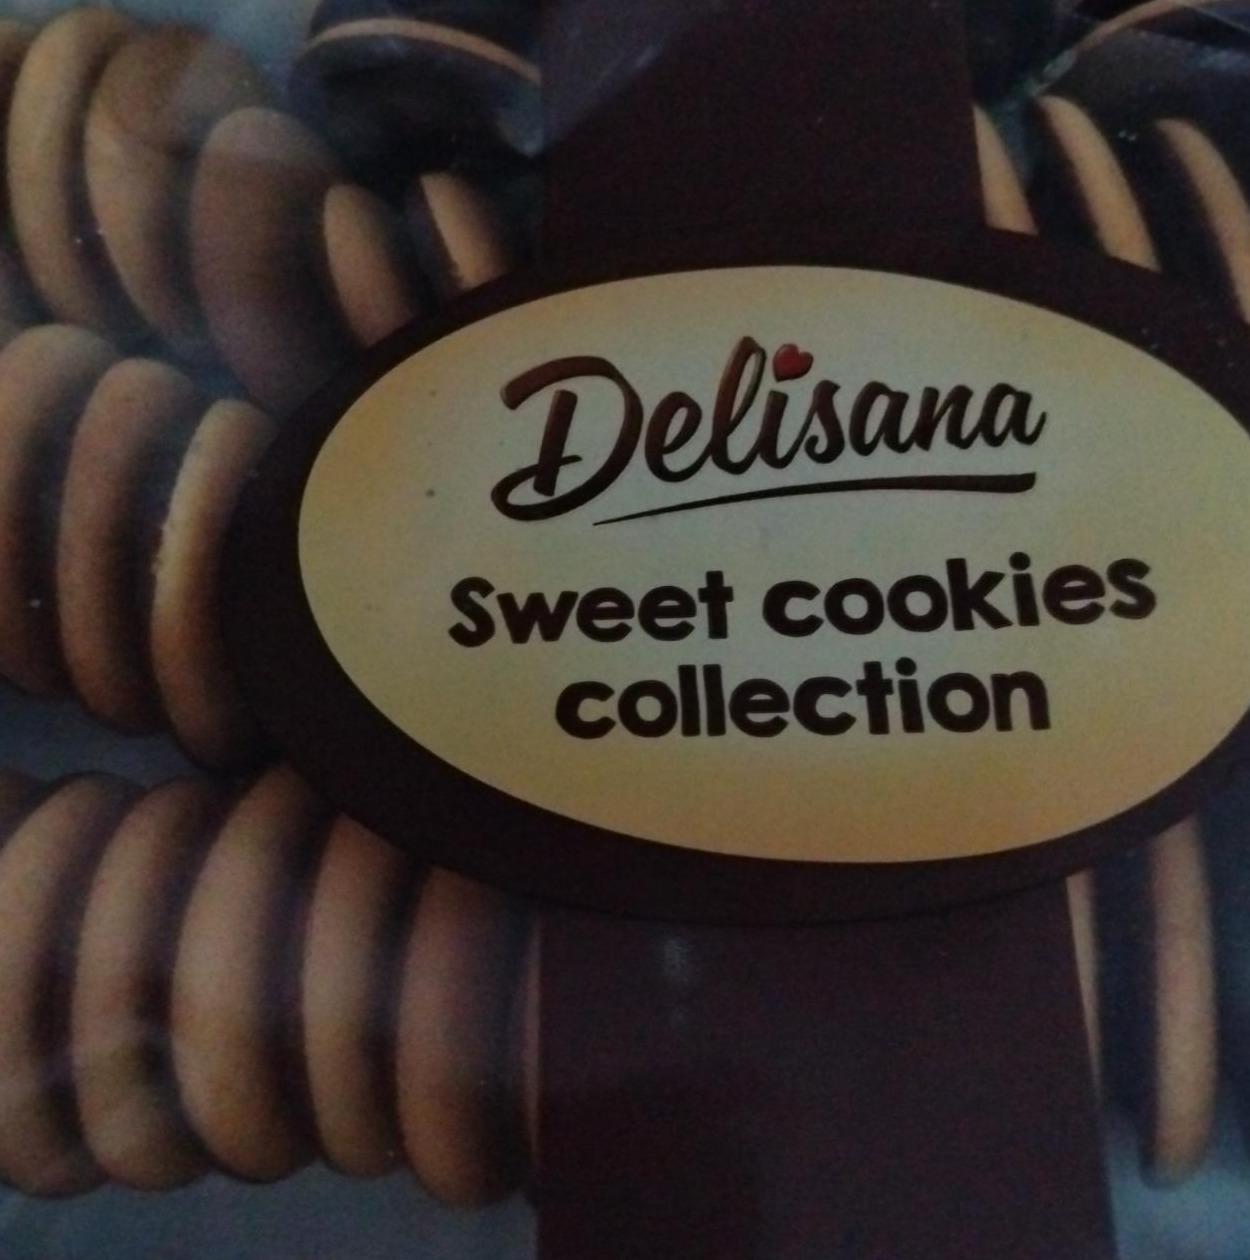 Zdjęcia - Sweet cookies collection Delisana